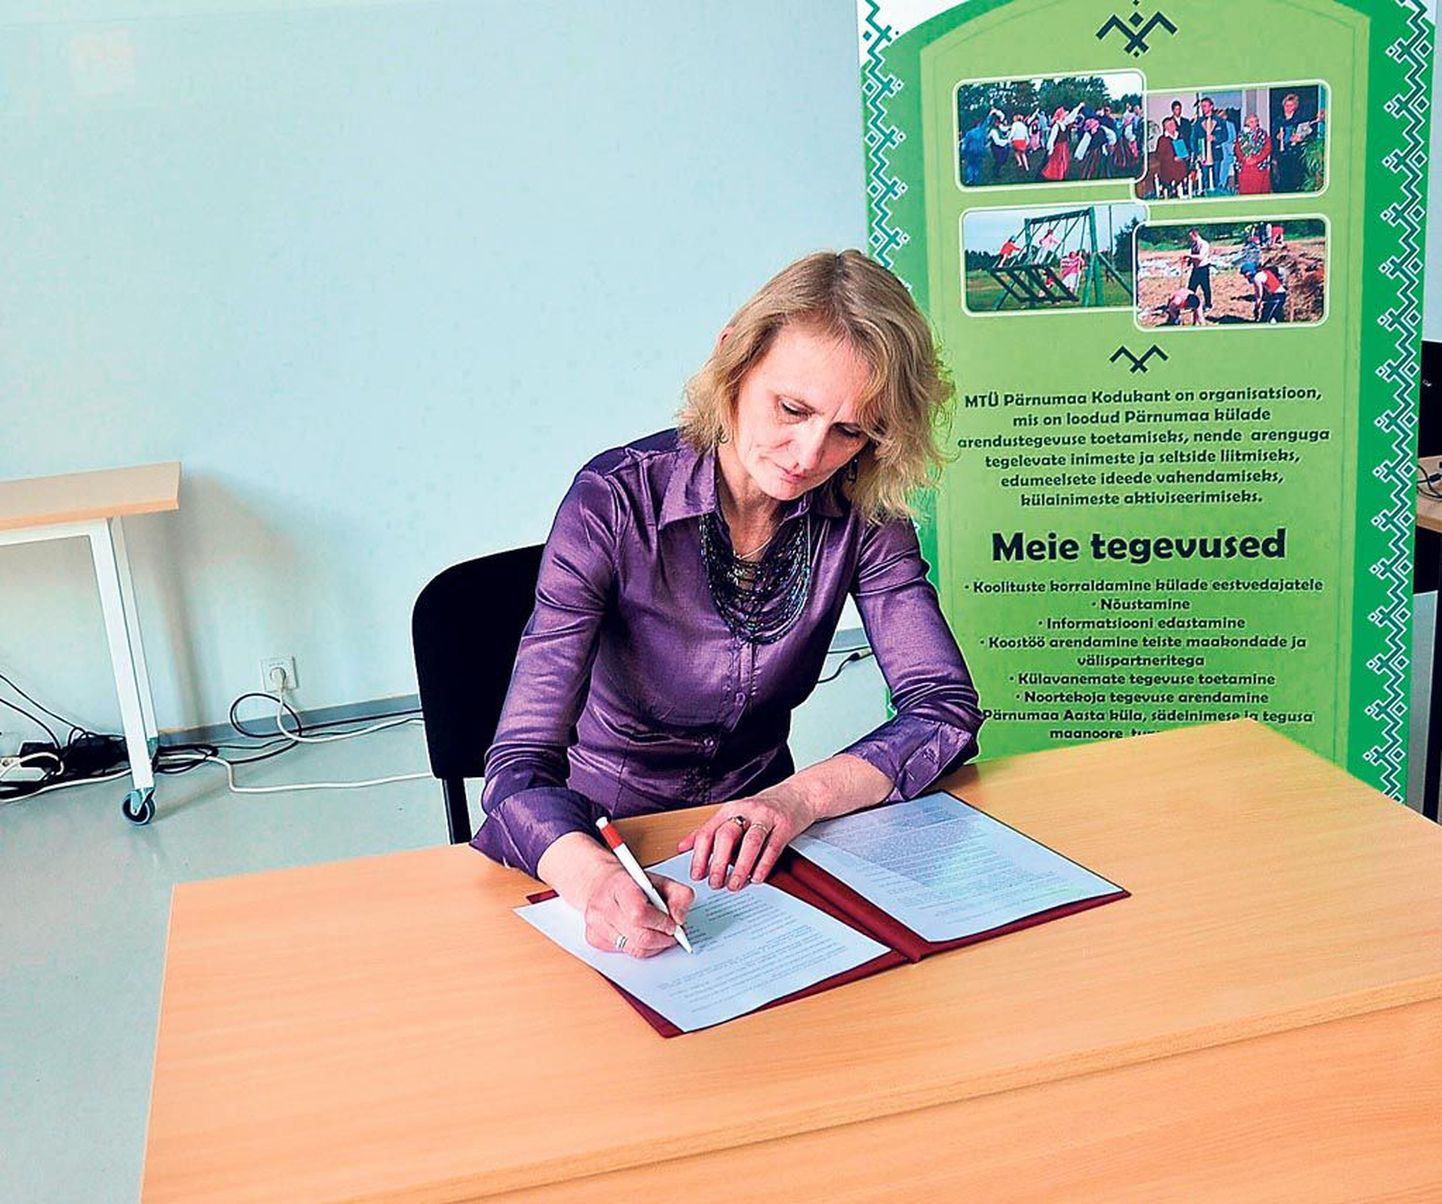 MTÜ Pärnumaa Kodukandi nimel kirjutas vabatahtliku tegevuse arendamise ühise tegutsemise kokkuleppele alla juhatuse esimees Eve Sikka.